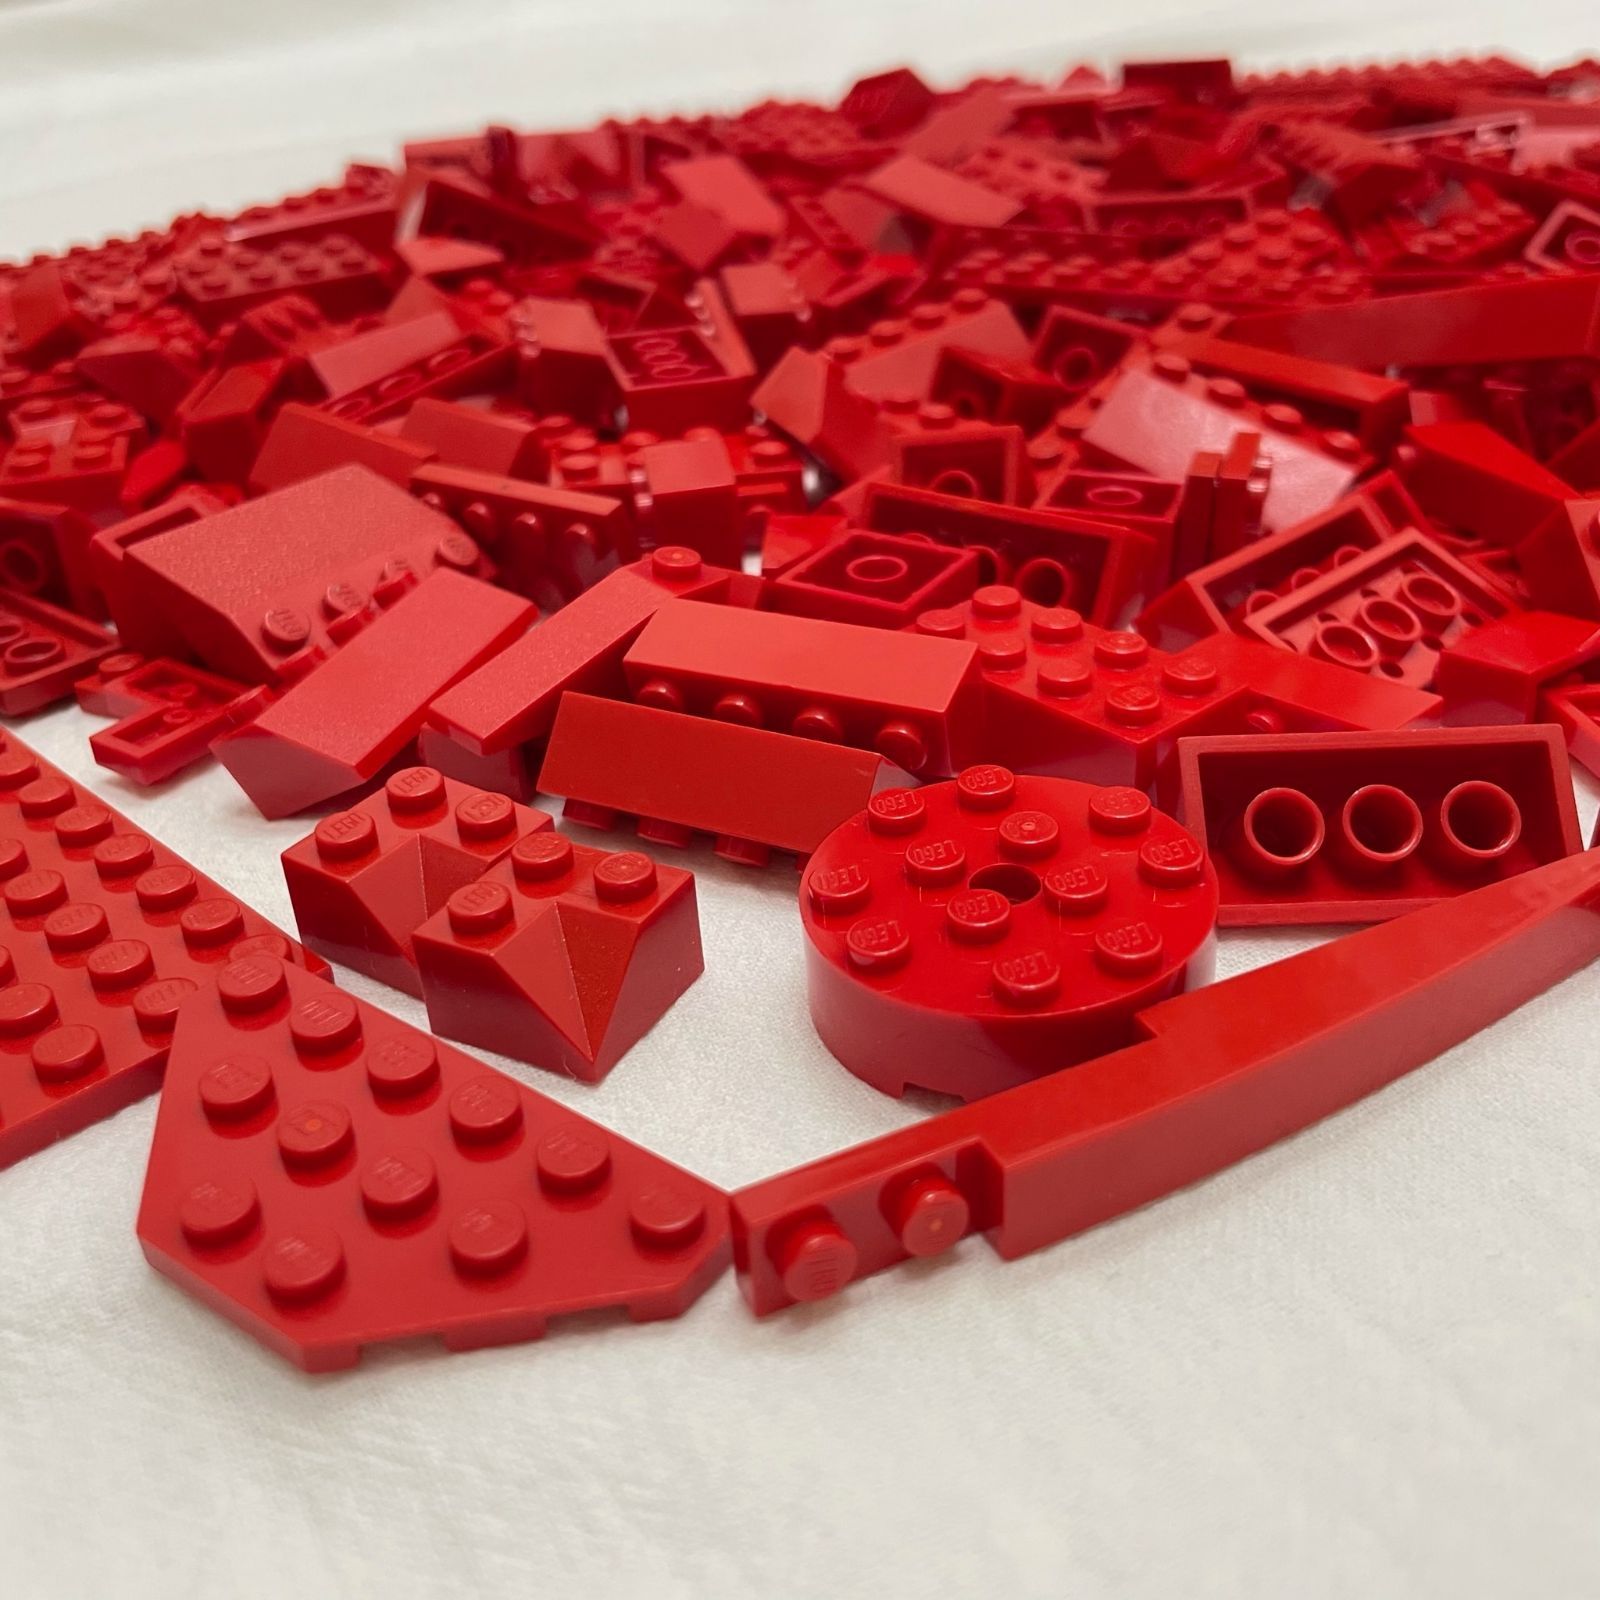 LEGO レゴ 赤 レッド系 中古 パーツ ブロック プレート スロープ